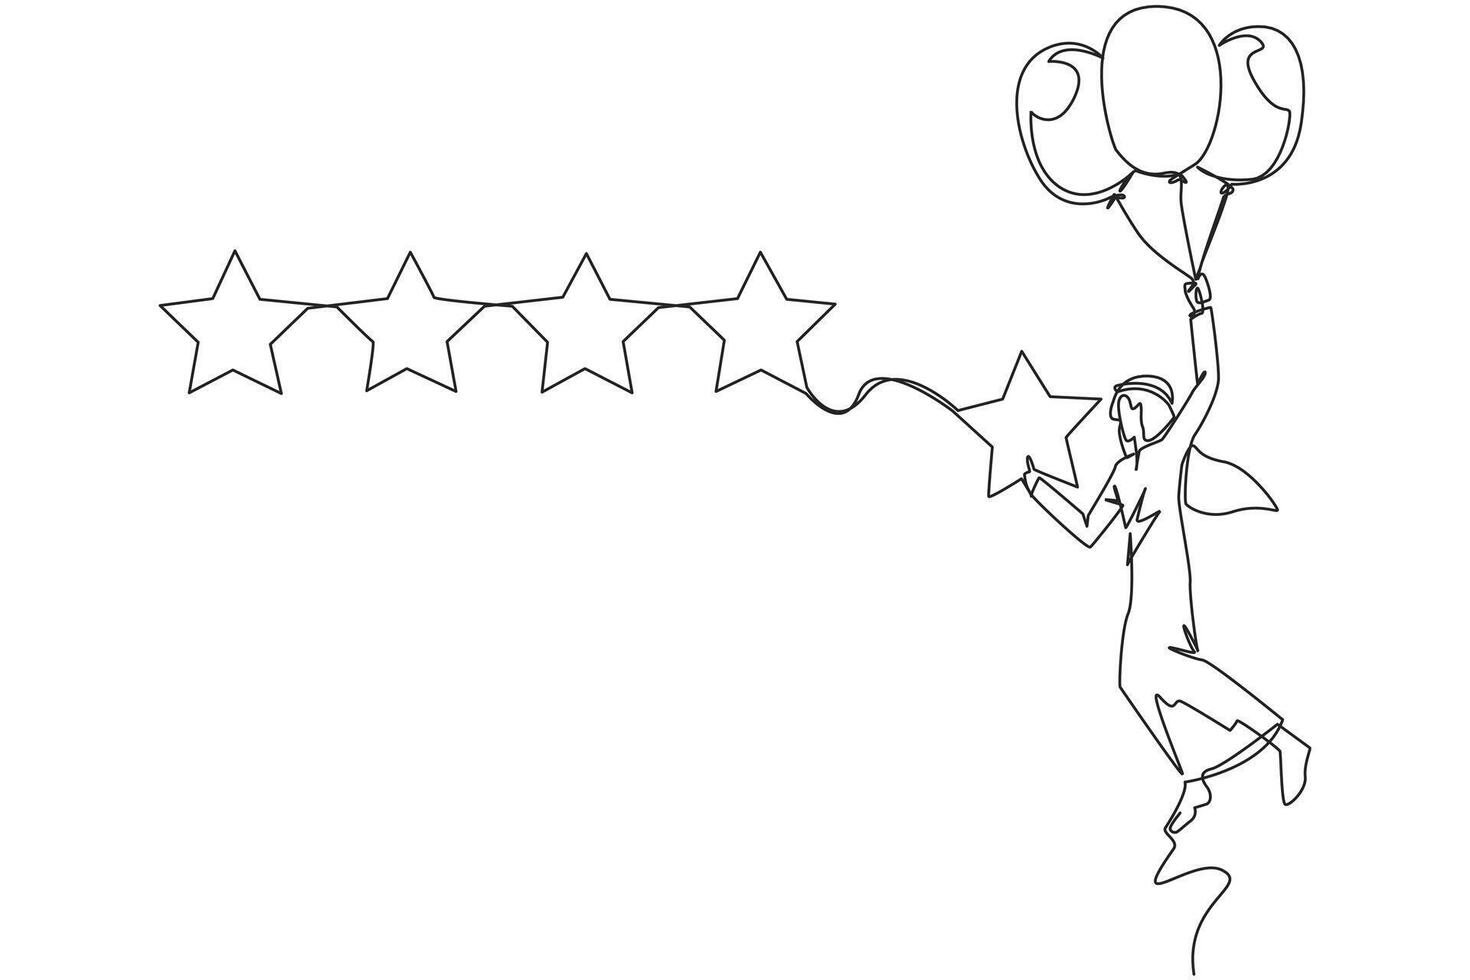 kontinuierlich einer Linie Zeichnung jung arabisch Mann fliegend mit Ballon tragen 1 Star und will zu ausrichten es mit das andere 4 Sterne. versuchen zu geben perfekt Bewertung. Single Linie zeichnen Design Vektor Illustration